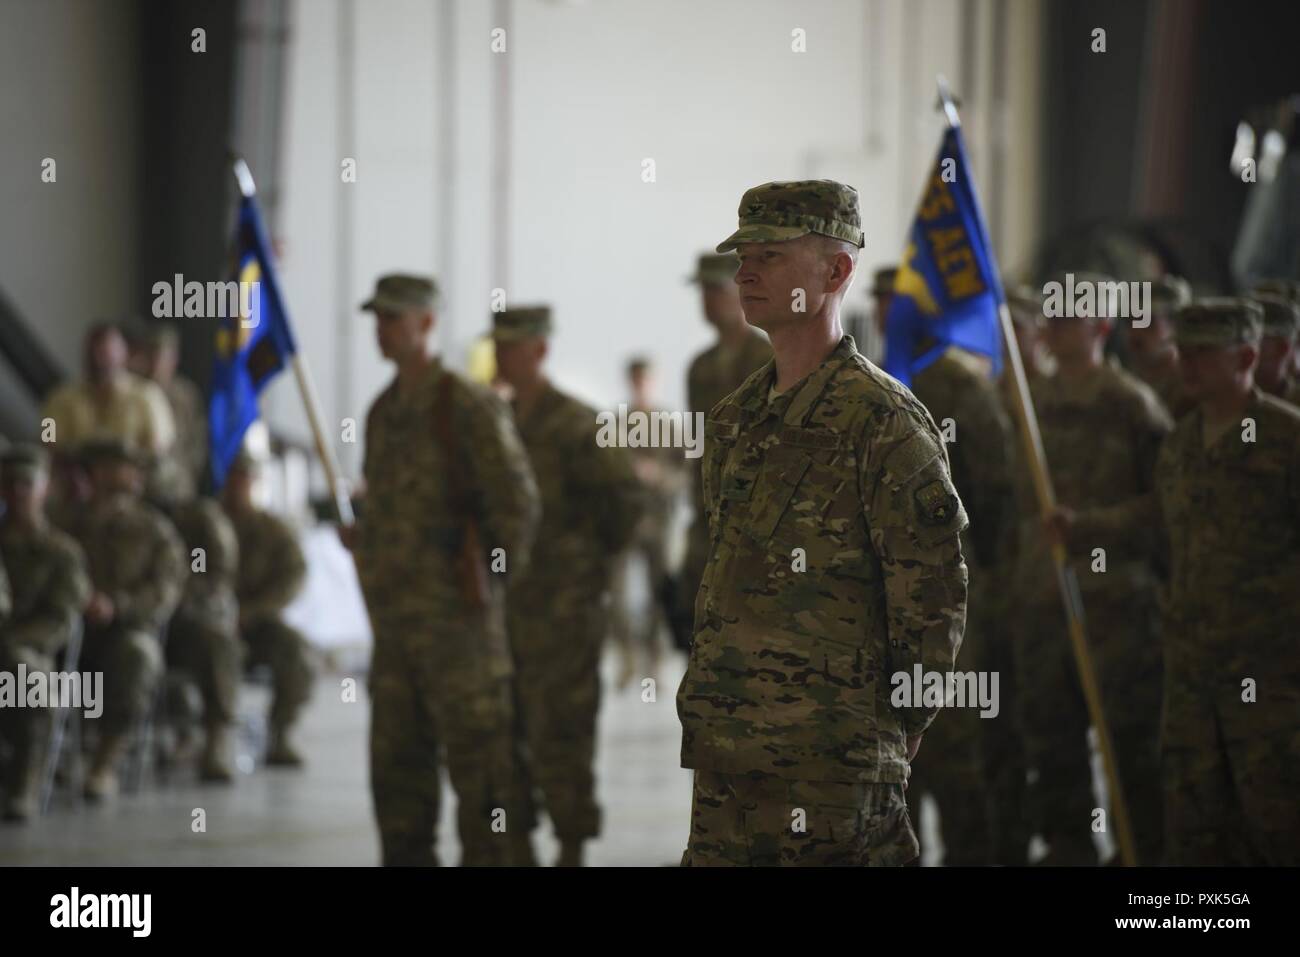 Le colonel William Burks, la 455 e Escadre expéditionnaire de la vice-commandant, s'élève en formation au cours d'une cérémonie de passation de commandement à l'aérodrome de Bagram, en Afghanistan, le 3 juin 2017. L'aérodrome de Bagram a accueilli son nouveau commandant, le brigadier. Le général Craig Baker. Banque D'Images